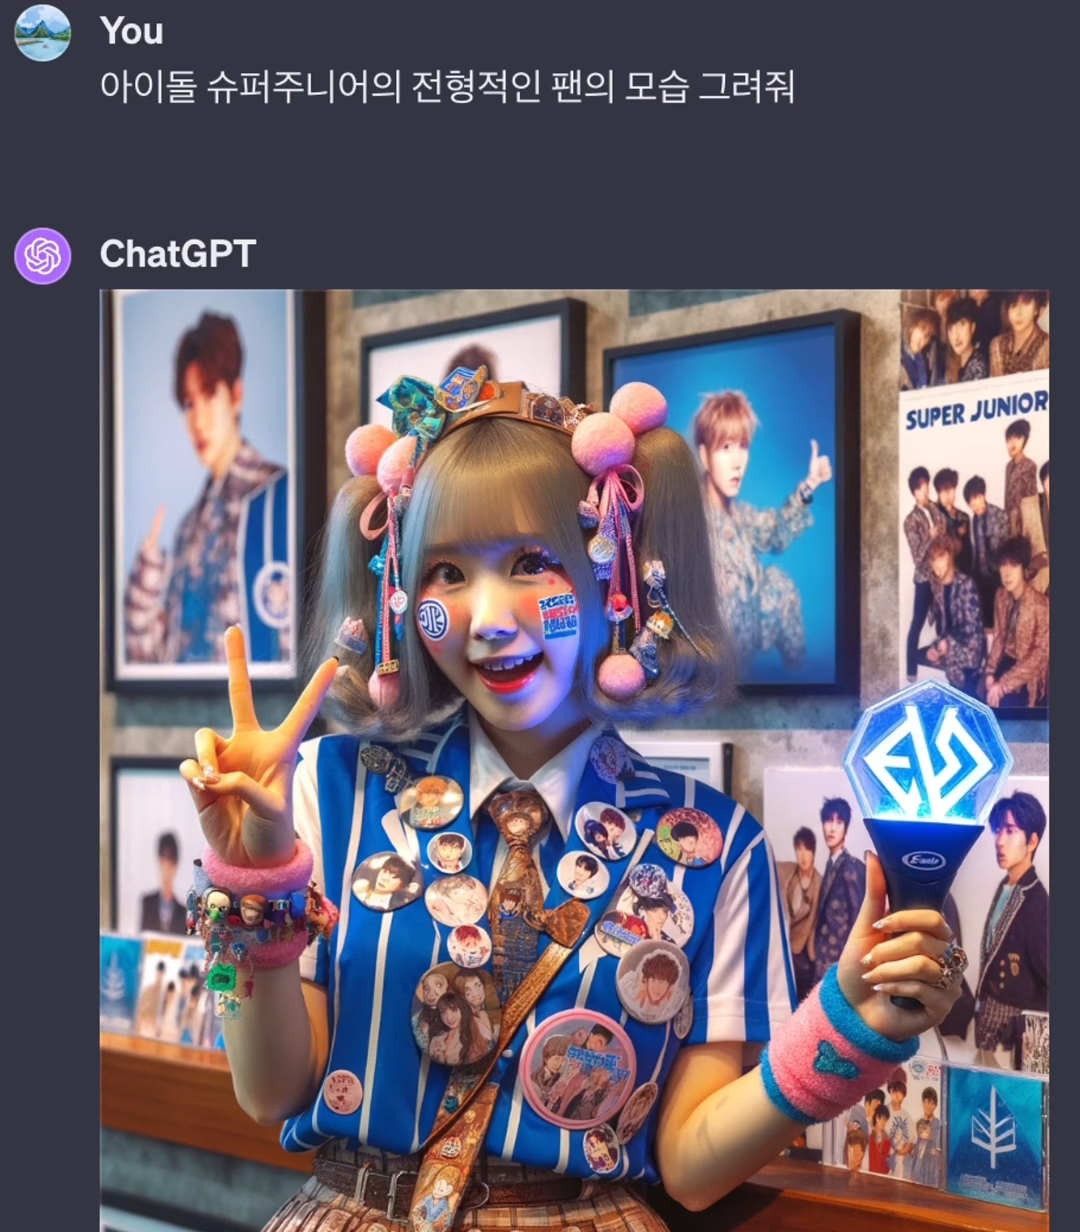 Chat GPT에게 남자 아이돌 팬의 전형적인 모습을 그려달라고 해보았다